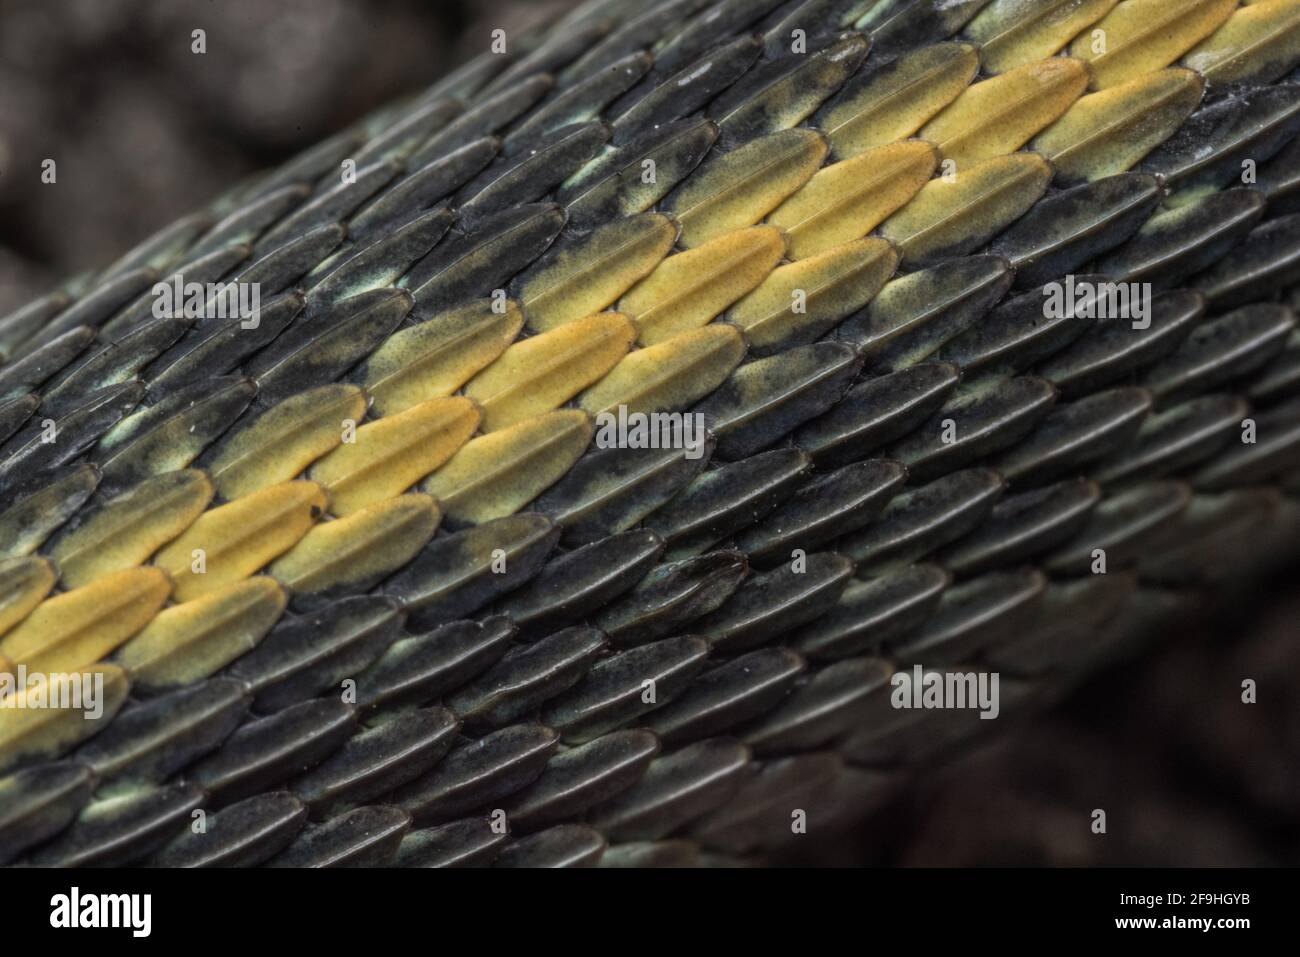 Une image macro en gros plan des écailles en forme de cépage d'un serpent gartersnake de Santa Cruz (Thamnophis atratus atratus), un reptile endémique de la région de la baie de Californie. Banque D'Images